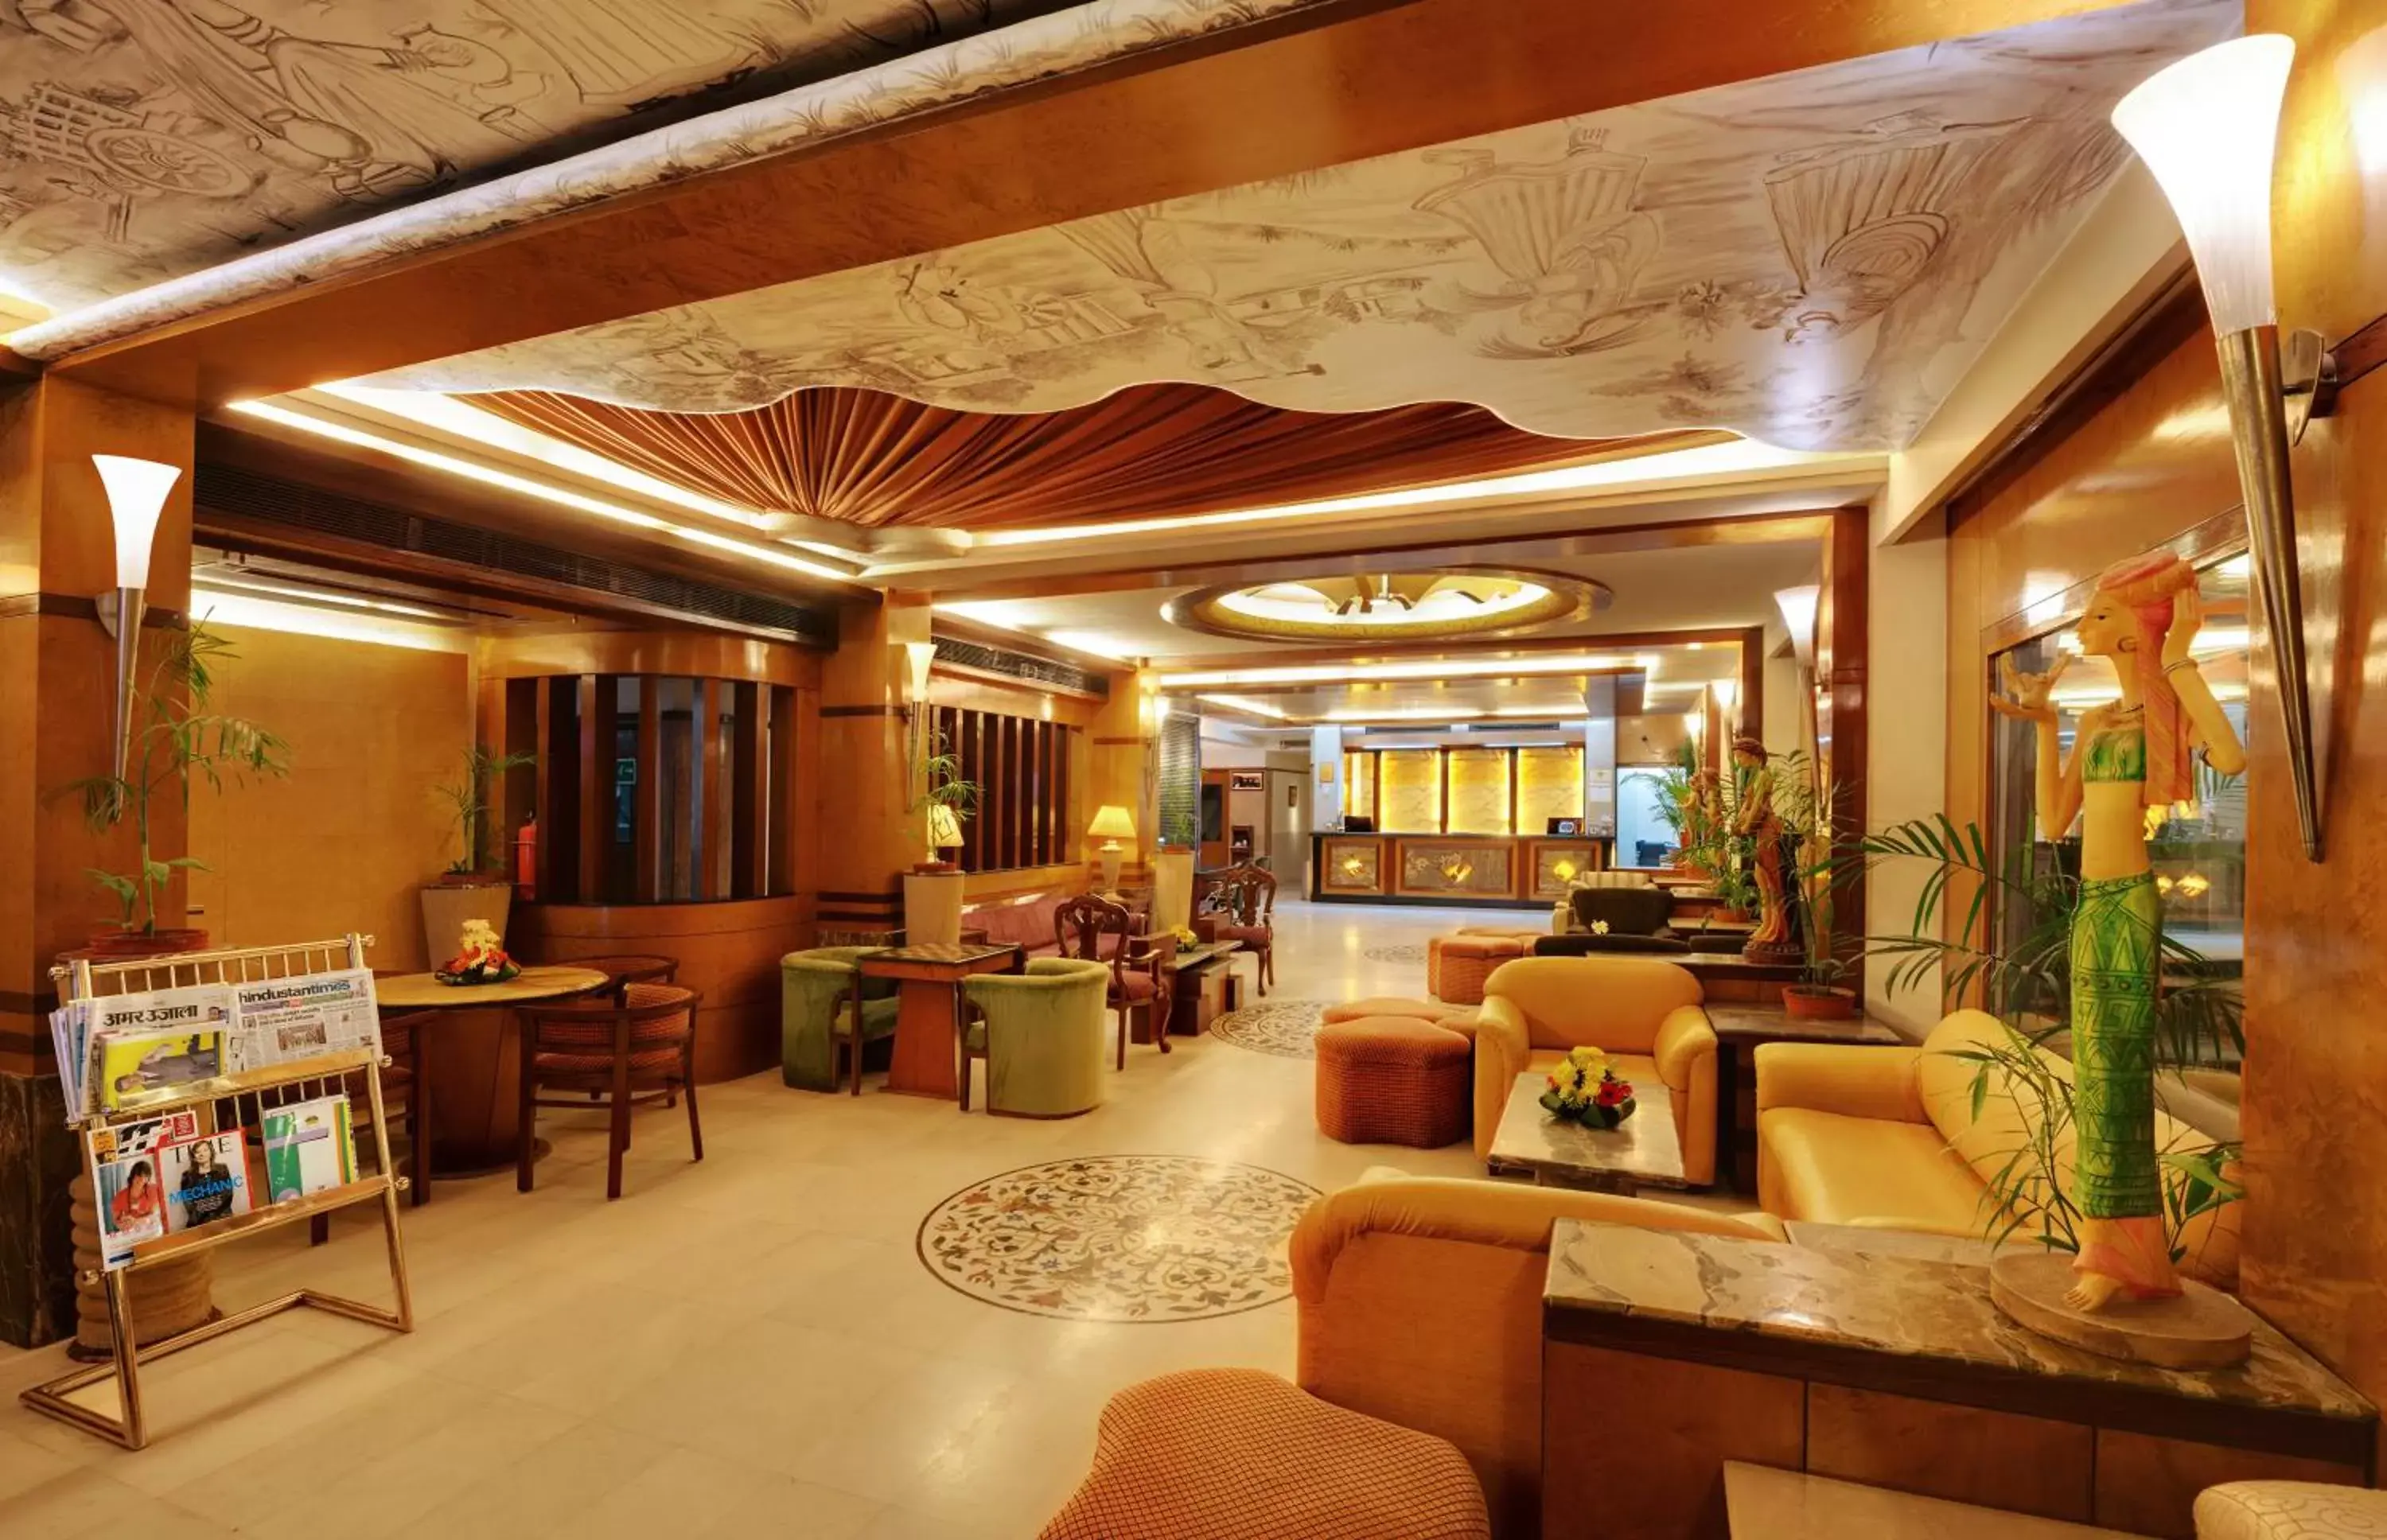 Lobby or reception in Hotel Amar